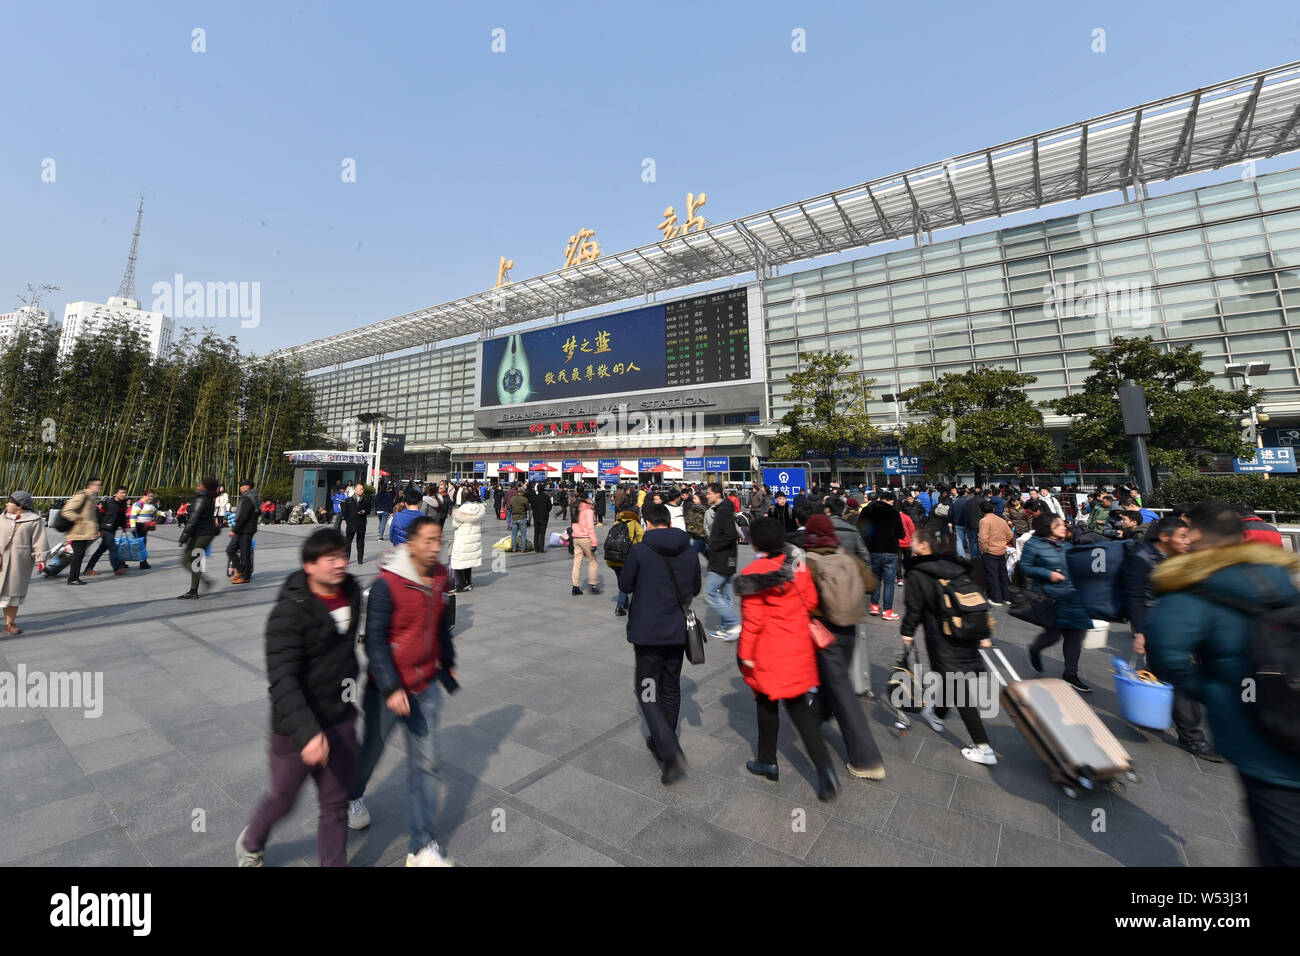 Chinesische Passagiere am Bahnhof Shanghai zurück nach Hause mit dem Zug für das chinesische Mondjahr während des Frühlings Festival reisen ru zu gehen Stockfoto